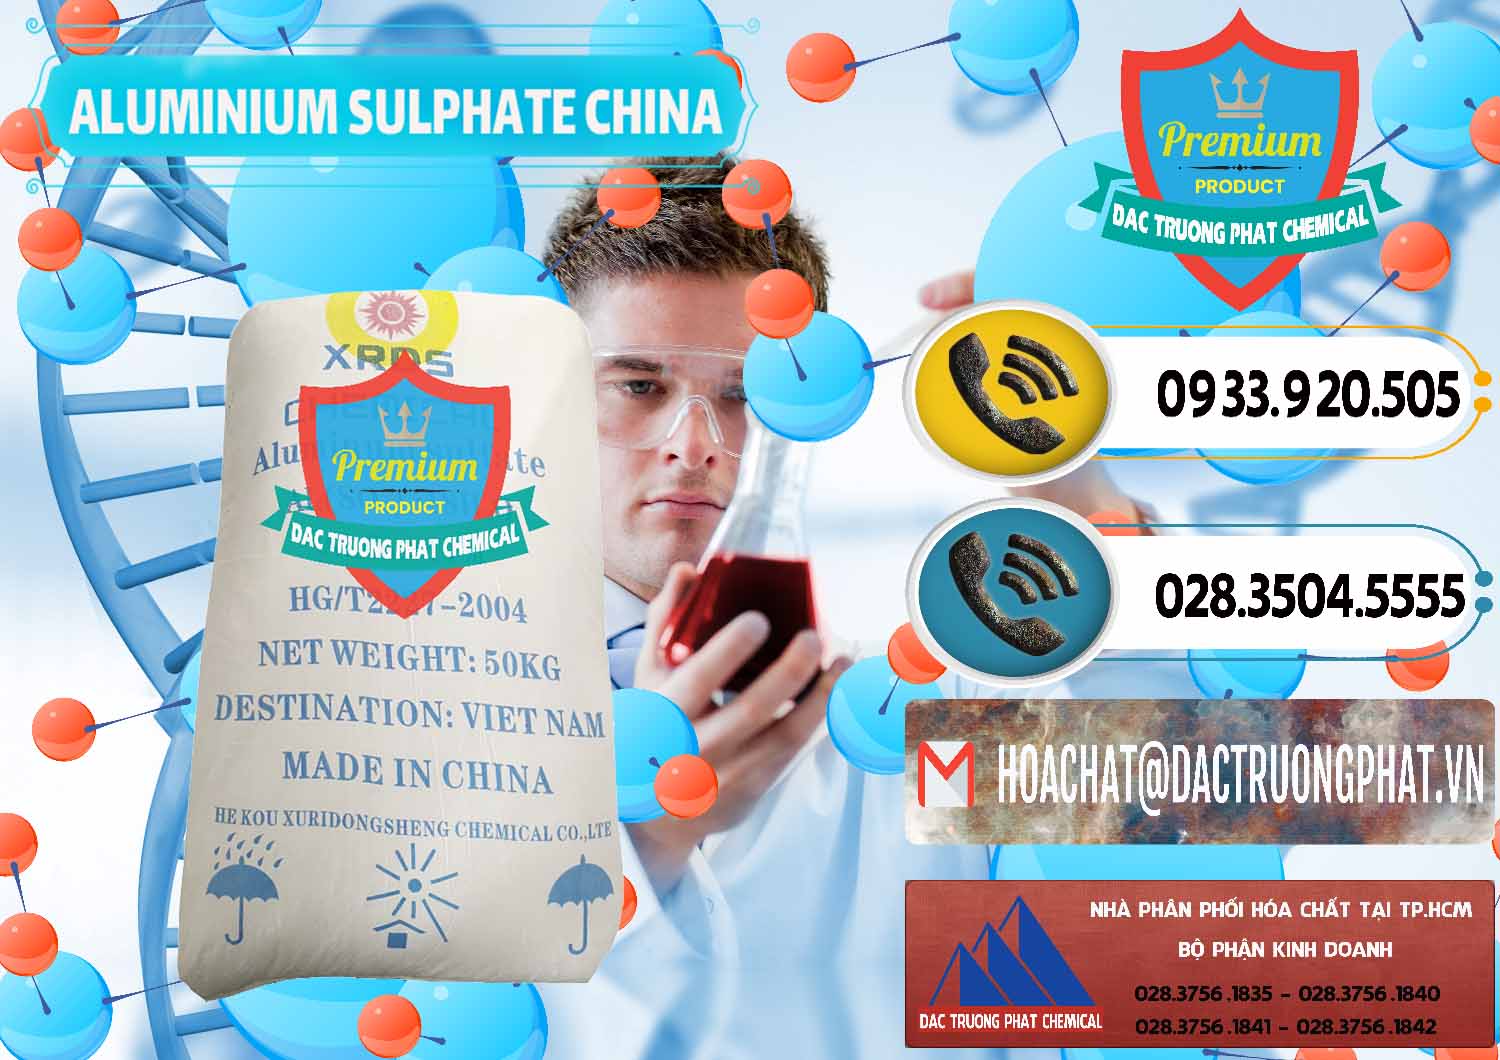 Cty bán _ cung cấp Phèn Nhôm - Al2(SO4)3 17% Trung Quốc China - 0464 - Nơi cung ứng _ phân phối hóa chất tại TP.HCM - hoachatdetnhuom.vn